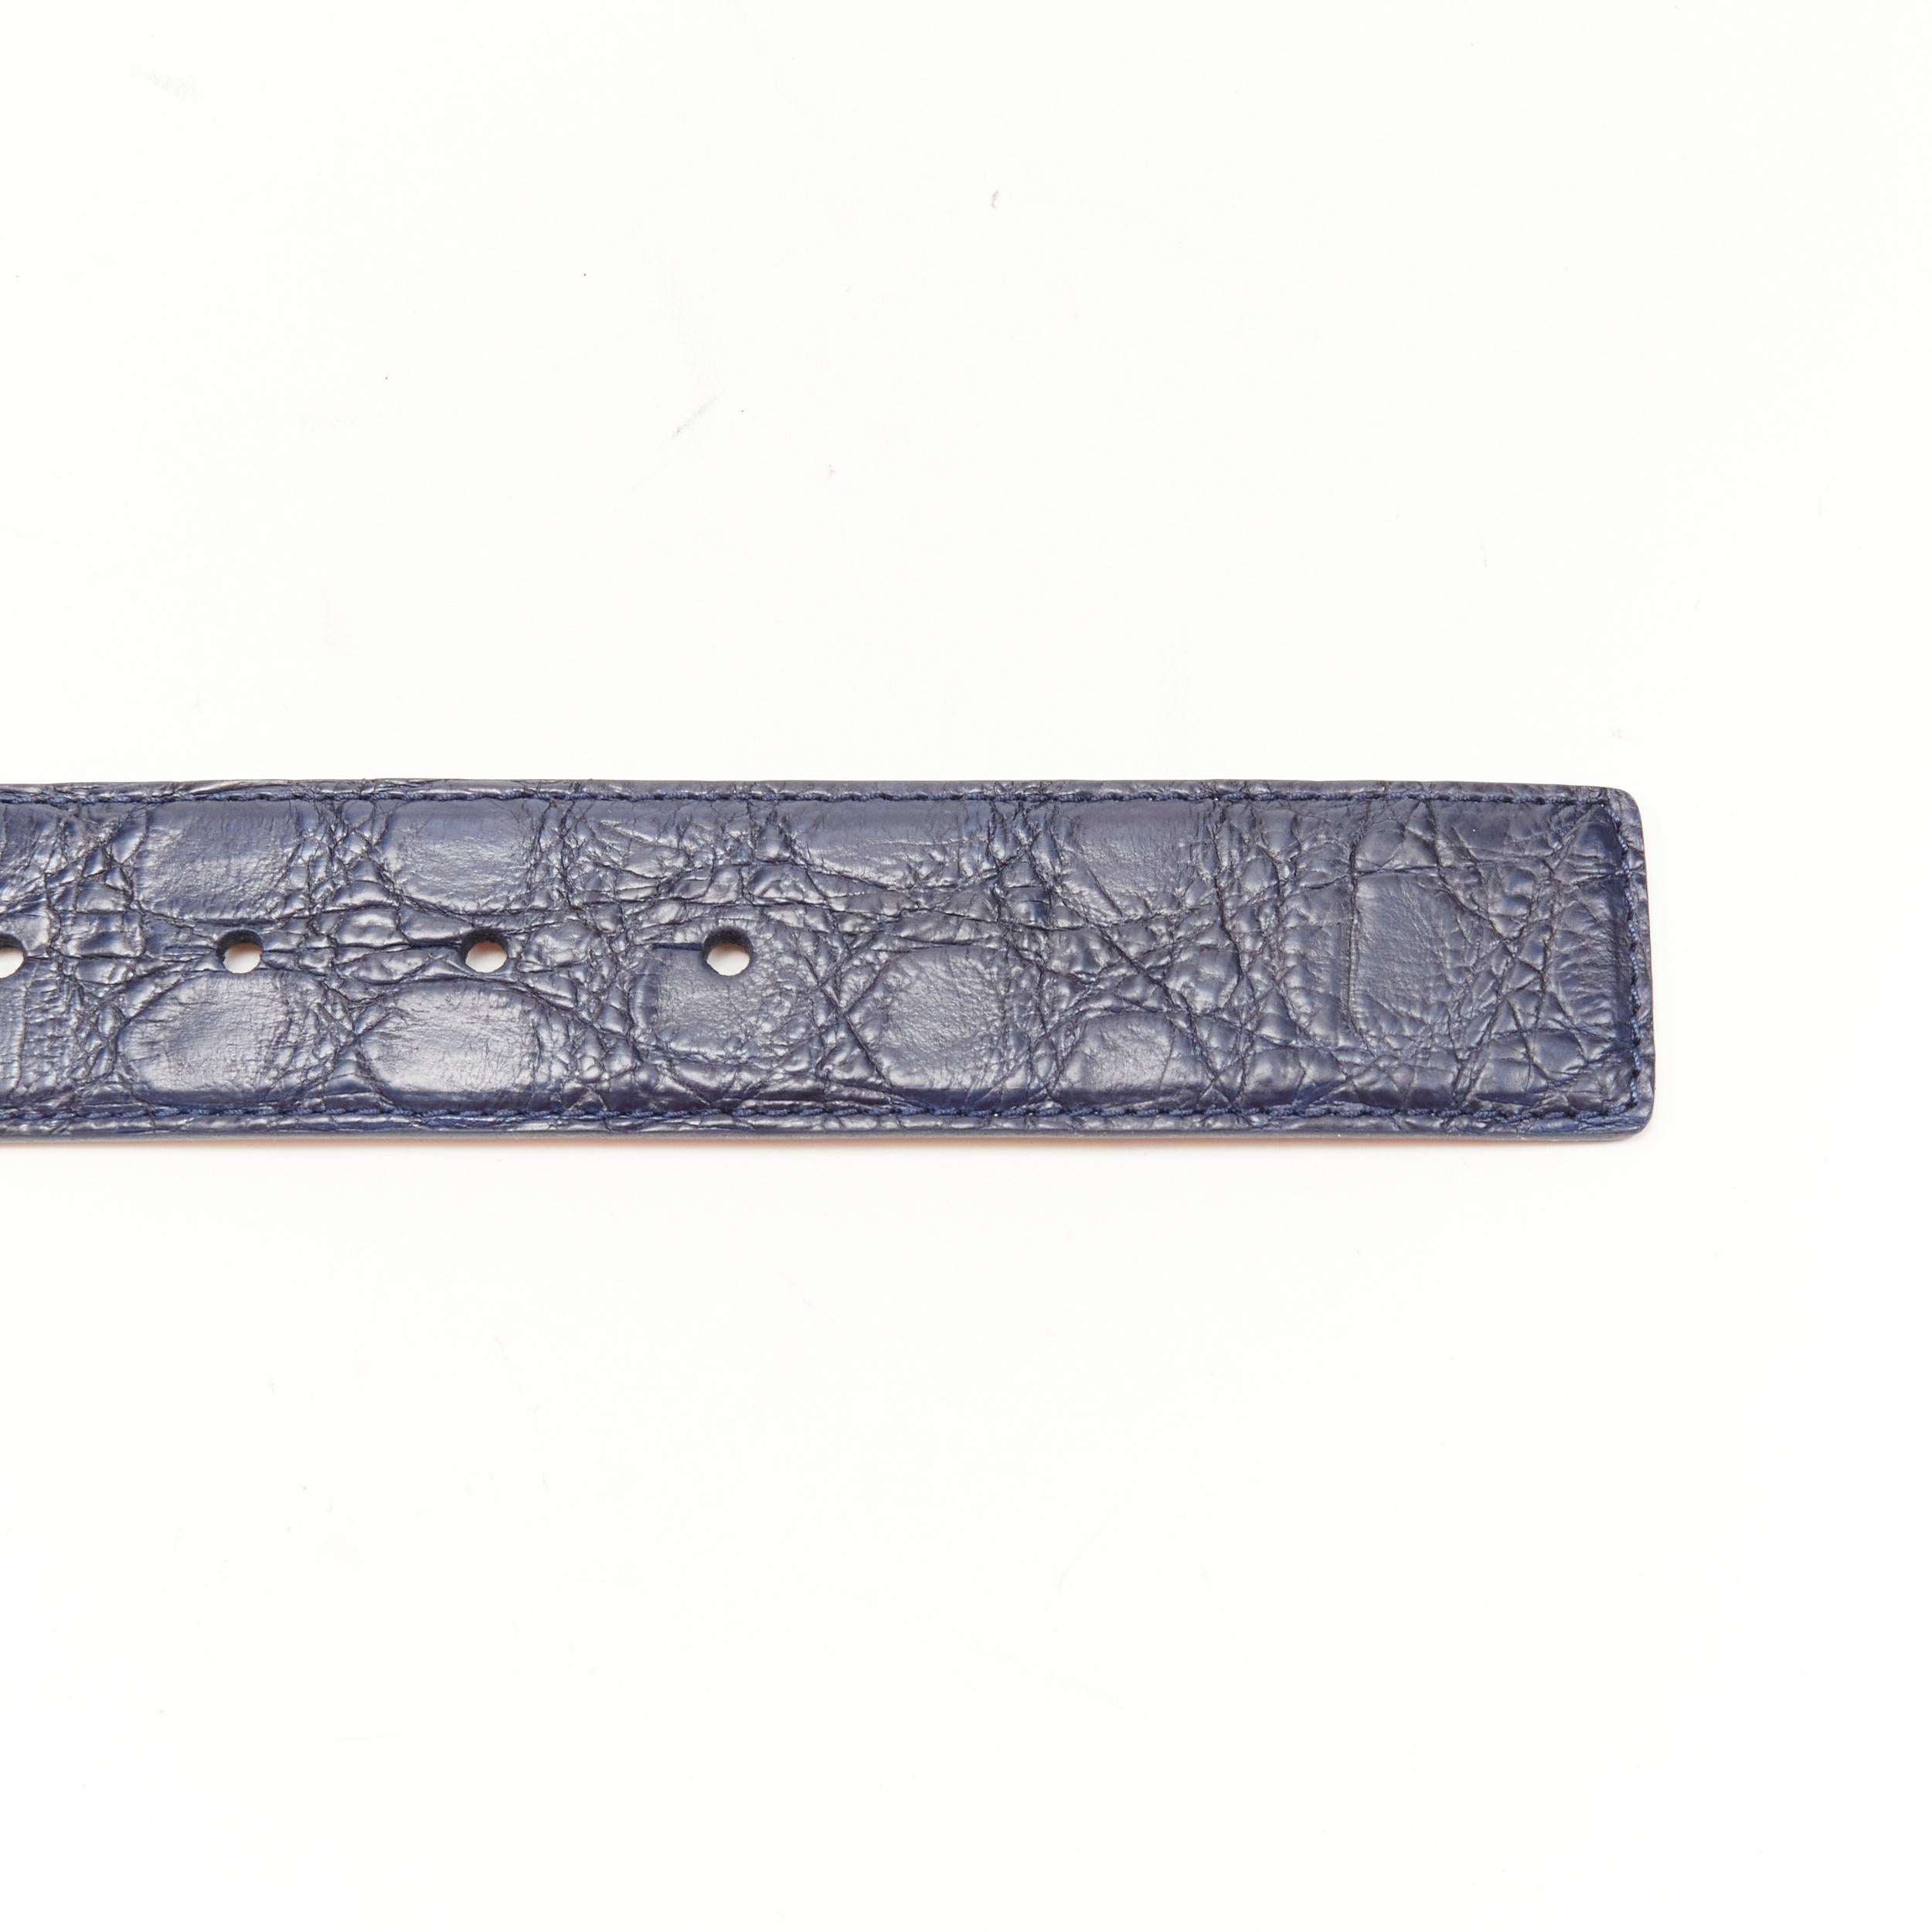 new VERSACE $1200 La Medusa silver buckle blue croc leather belt  105cm 40-44